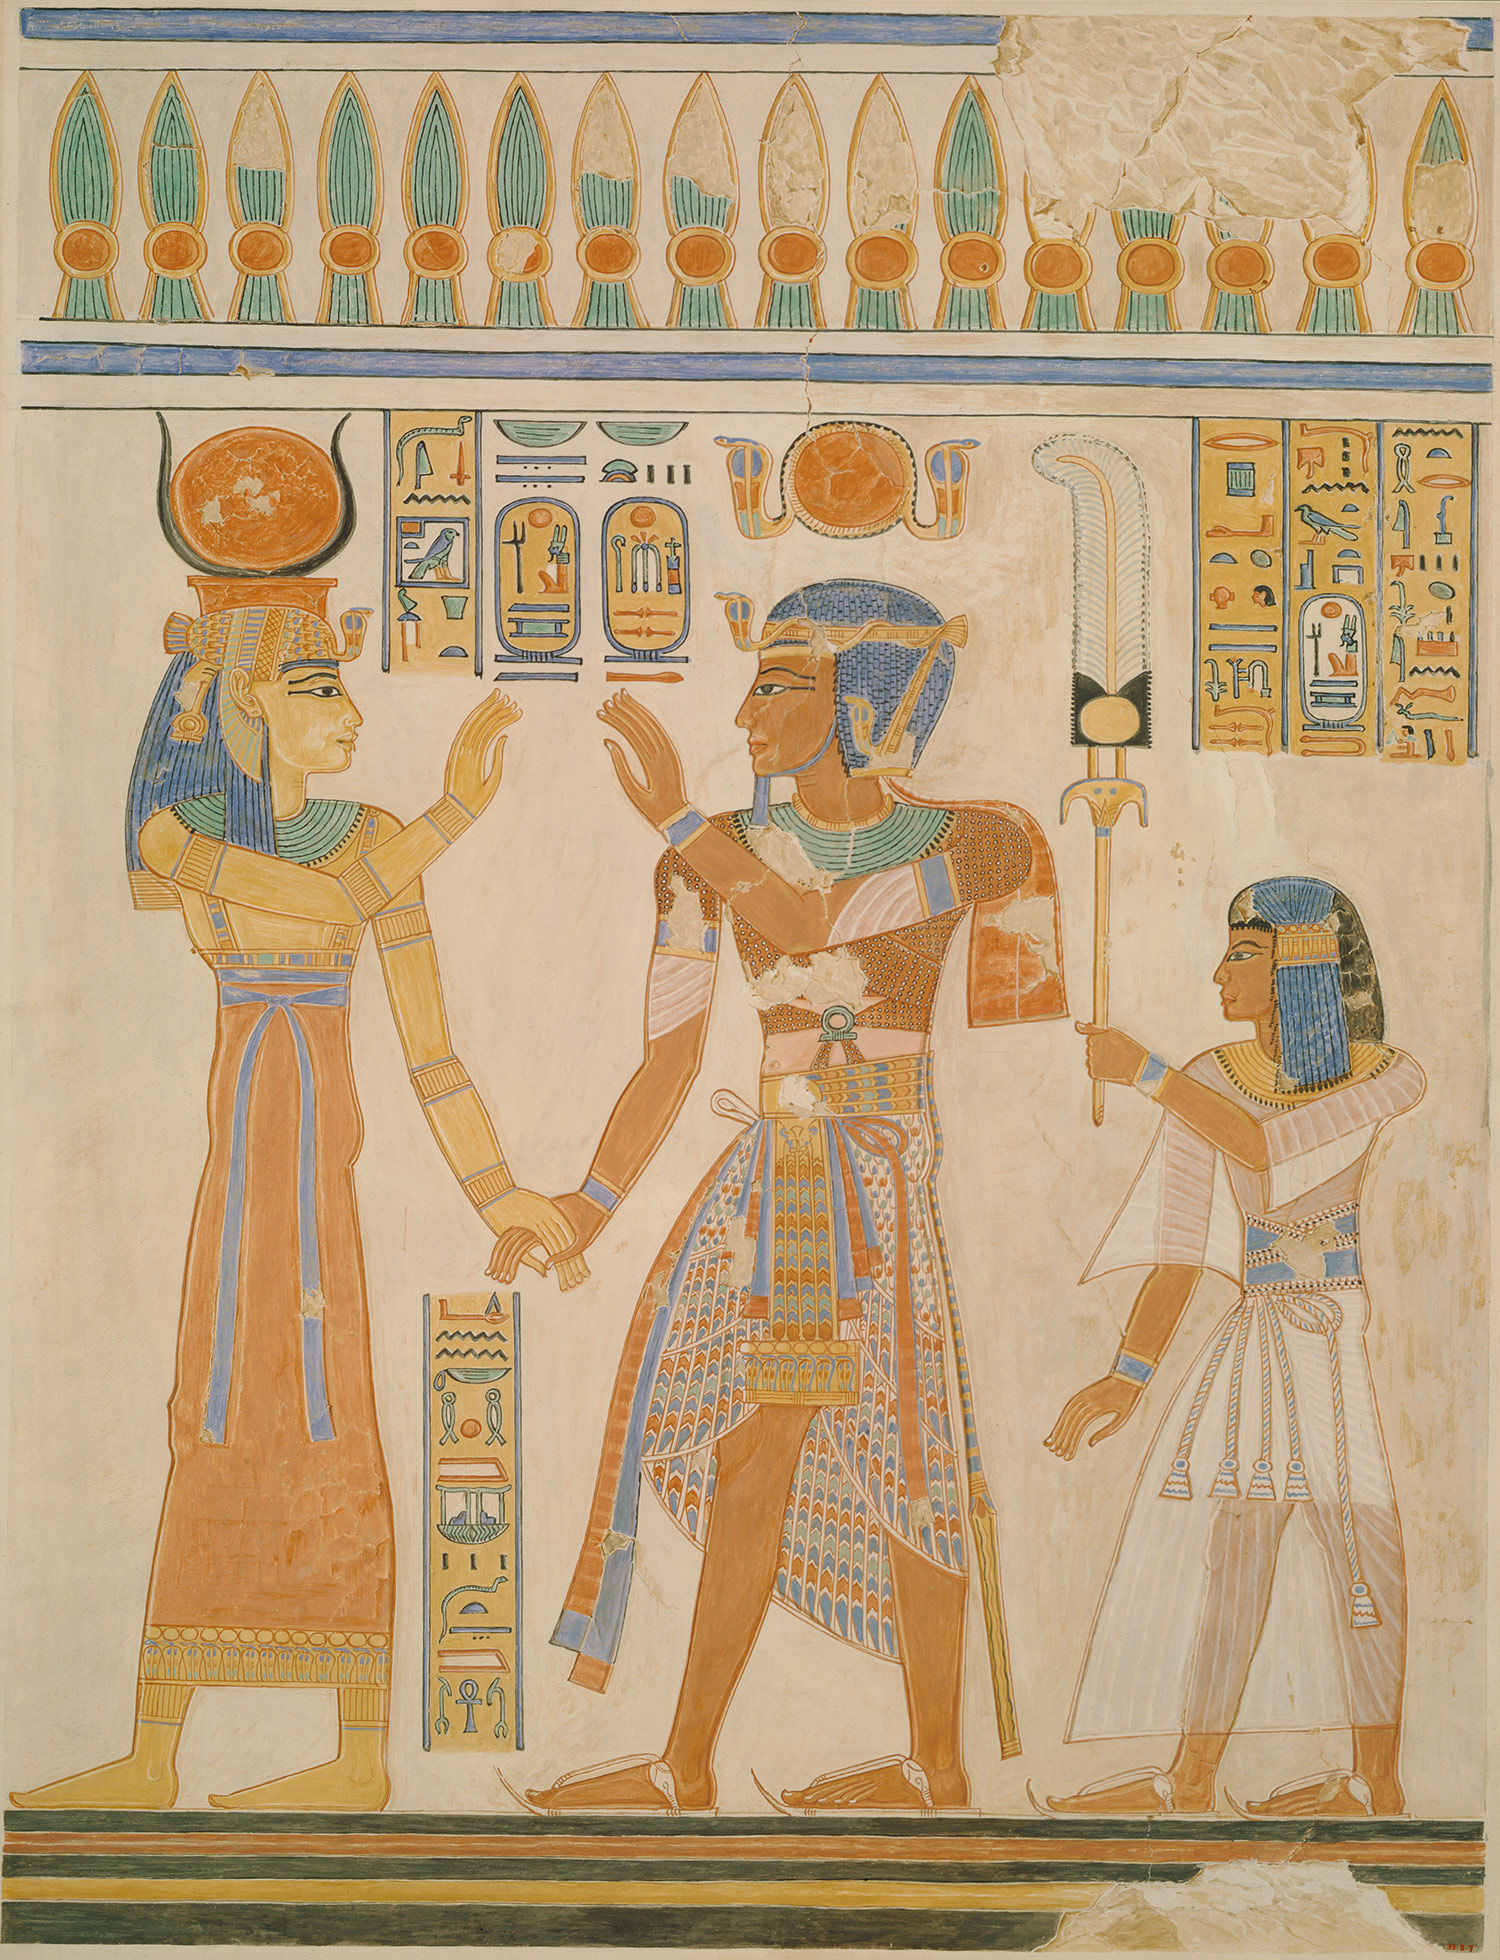 Ramses Iii Tomb